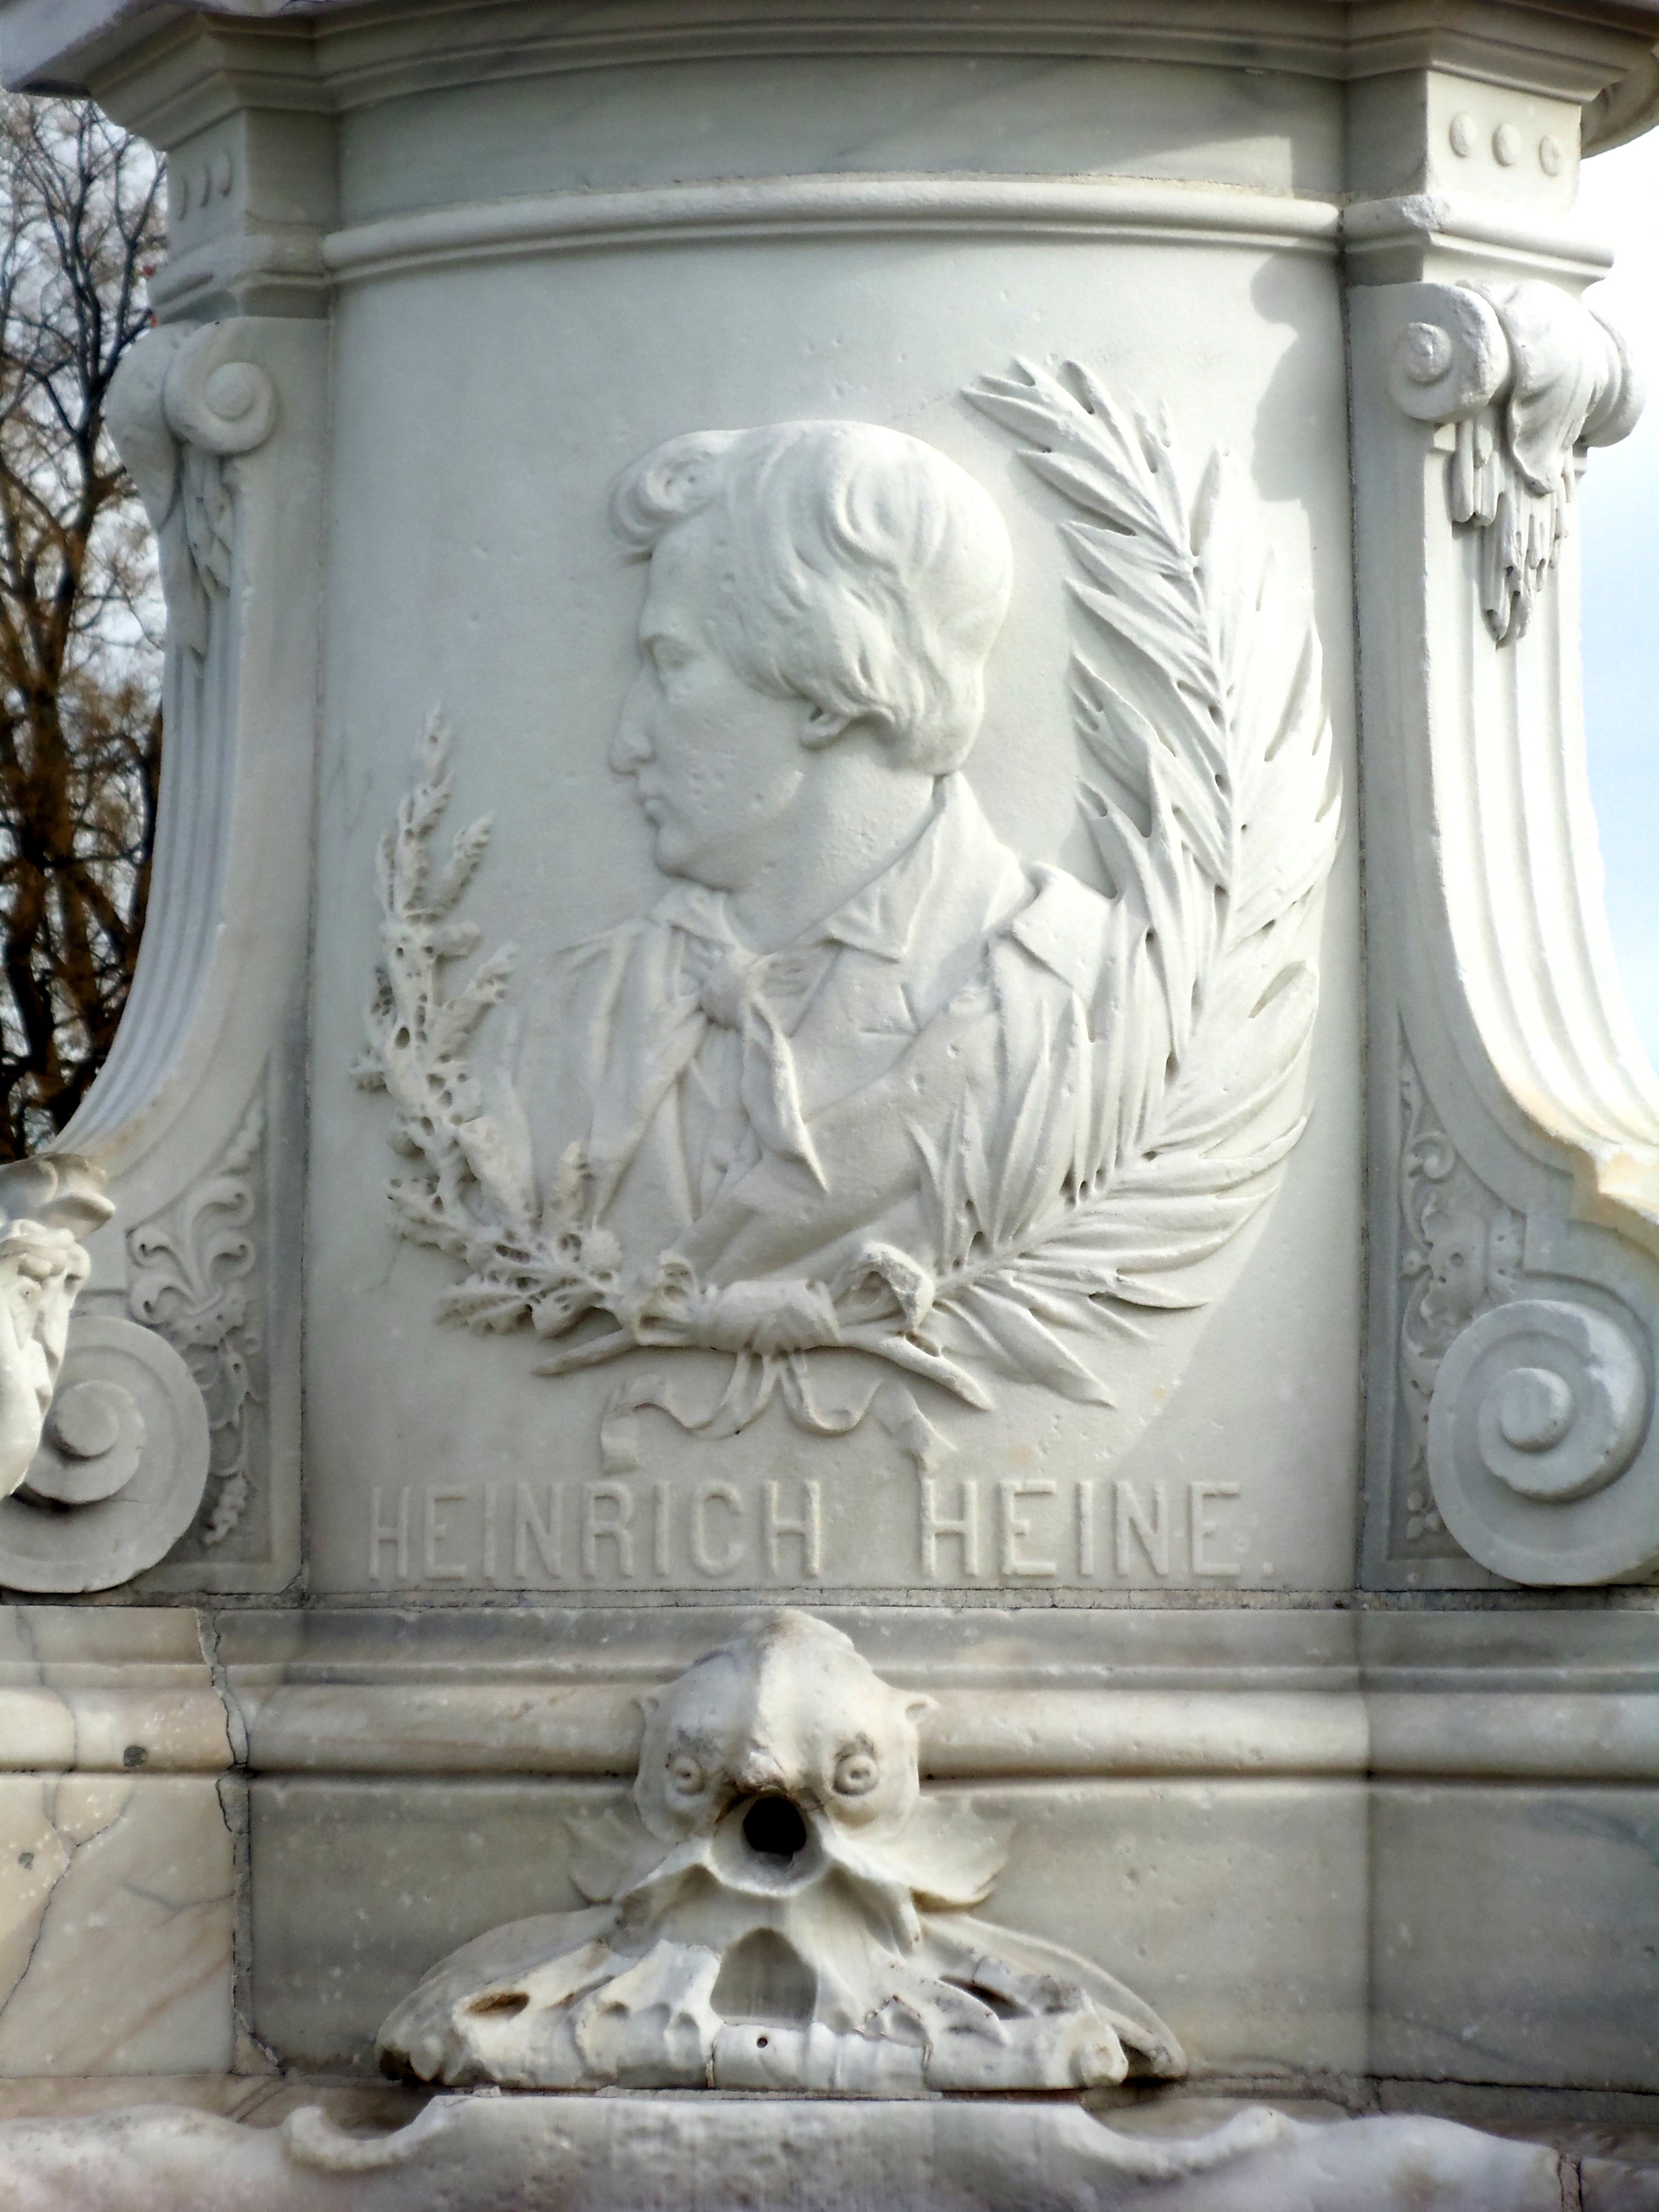 Heinrich Heine detail on Lorelei statue